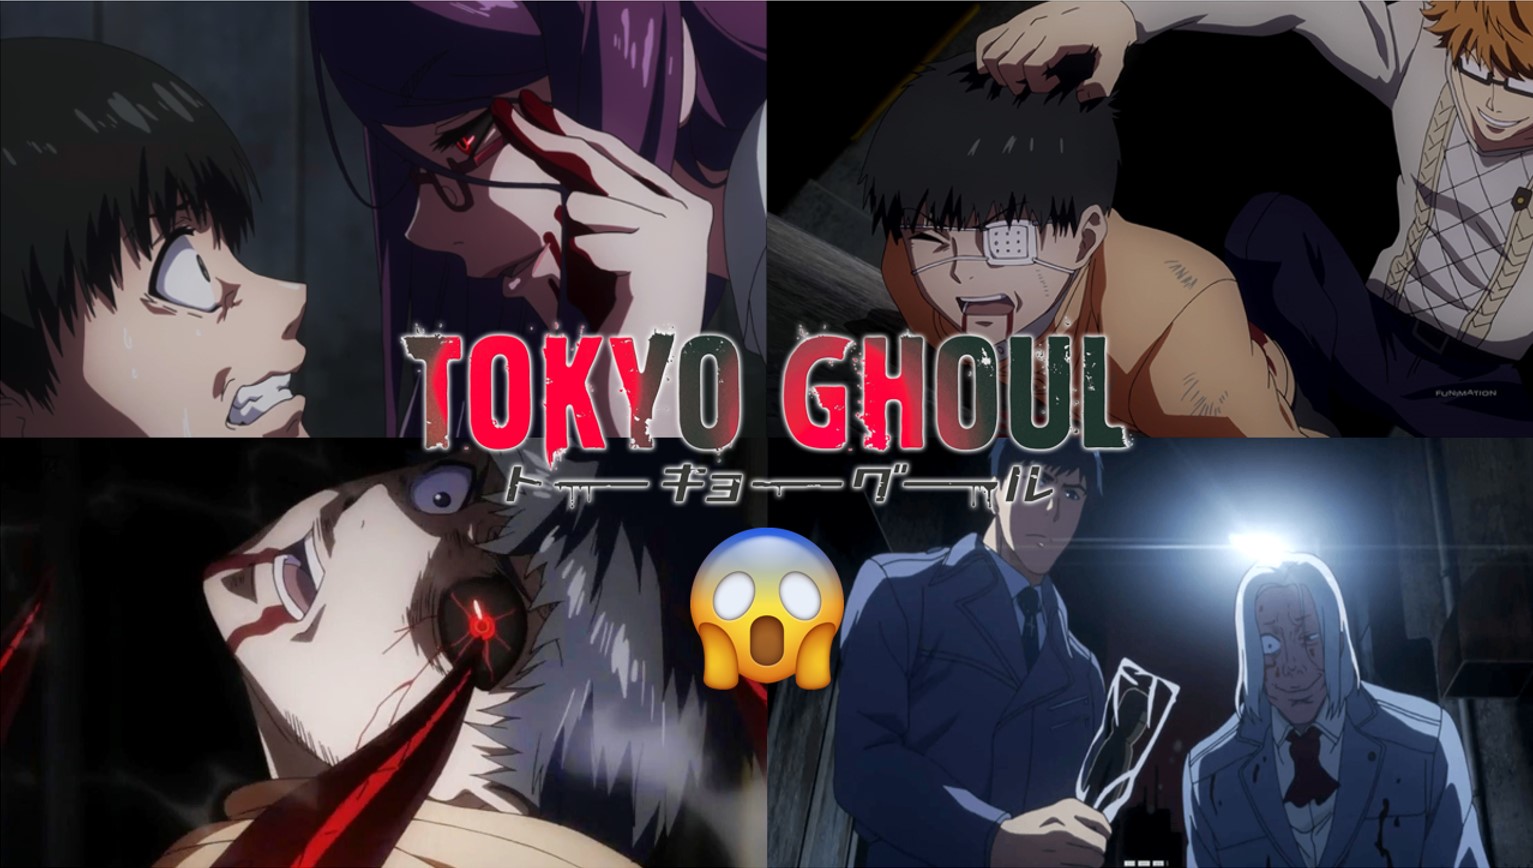 Tokyo Ghoul Season 3 Episode 1 REACTION